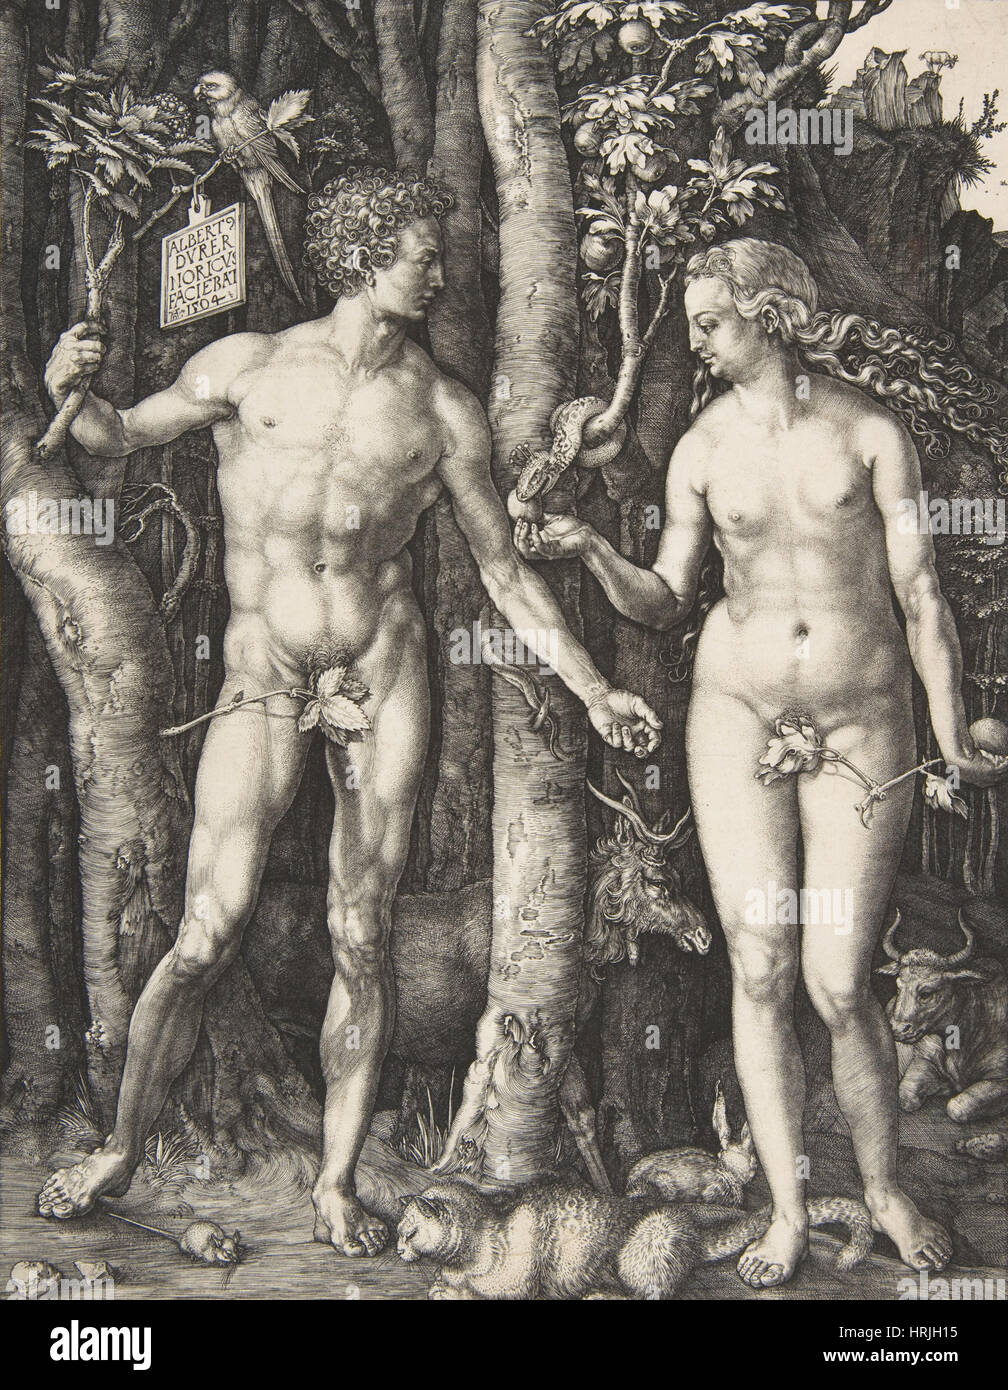 Garden of Eden, Adam and Eve by Albrecht DÌ rer Stock Photo